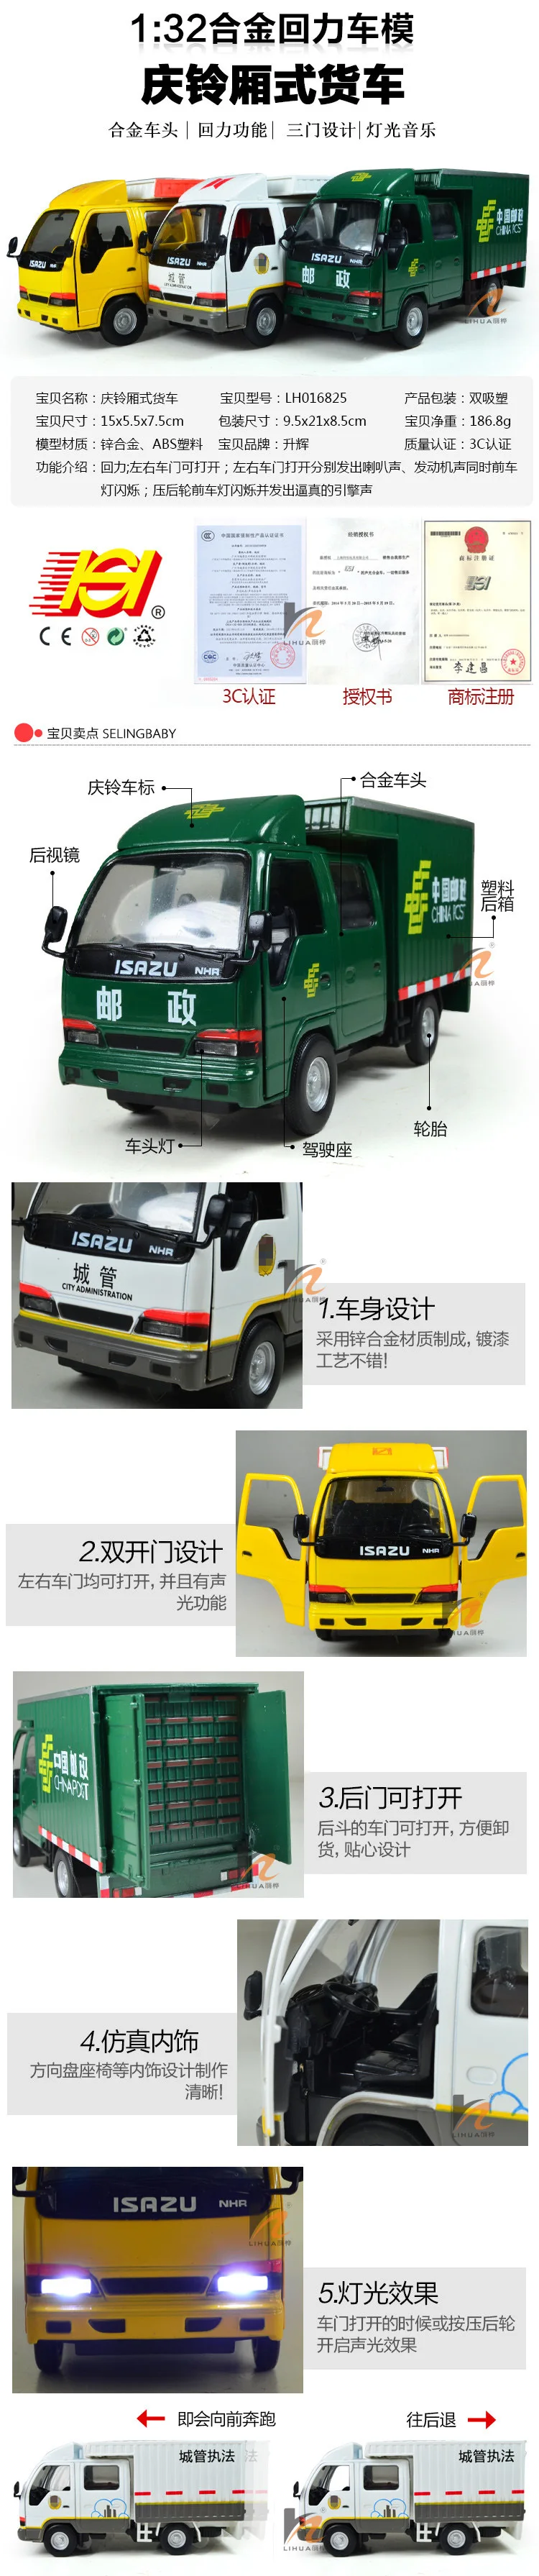 Shenghui 1: 32 Isuzu фургон модель автомобиля сплав грузовик звук и светильник игрушечный автомобиль